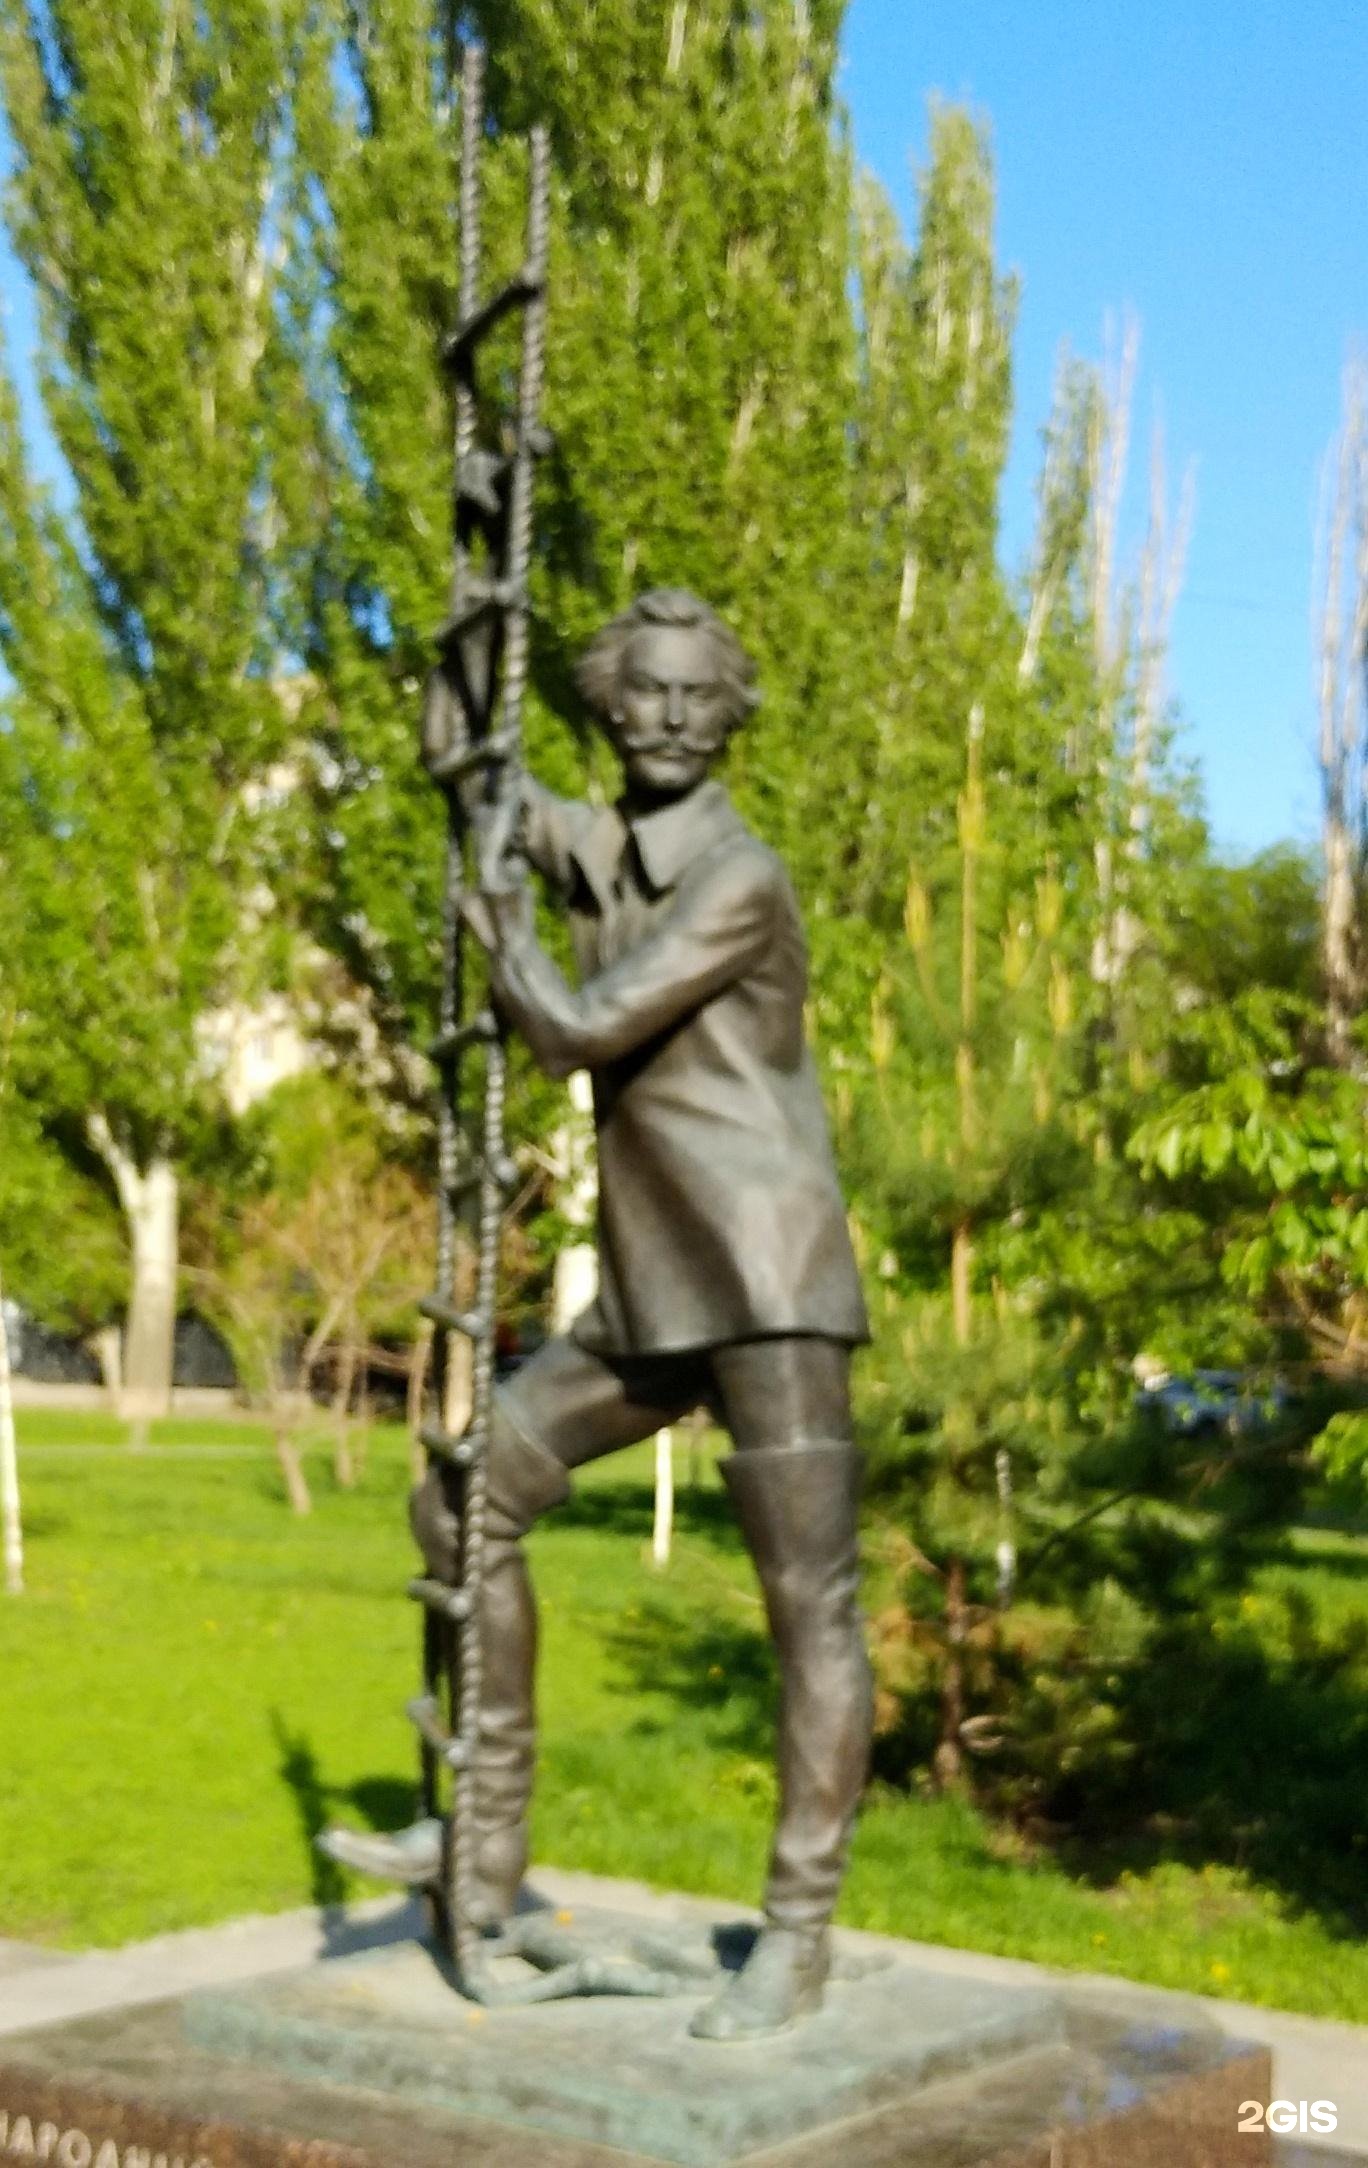 памятник янковскому в саратове фото